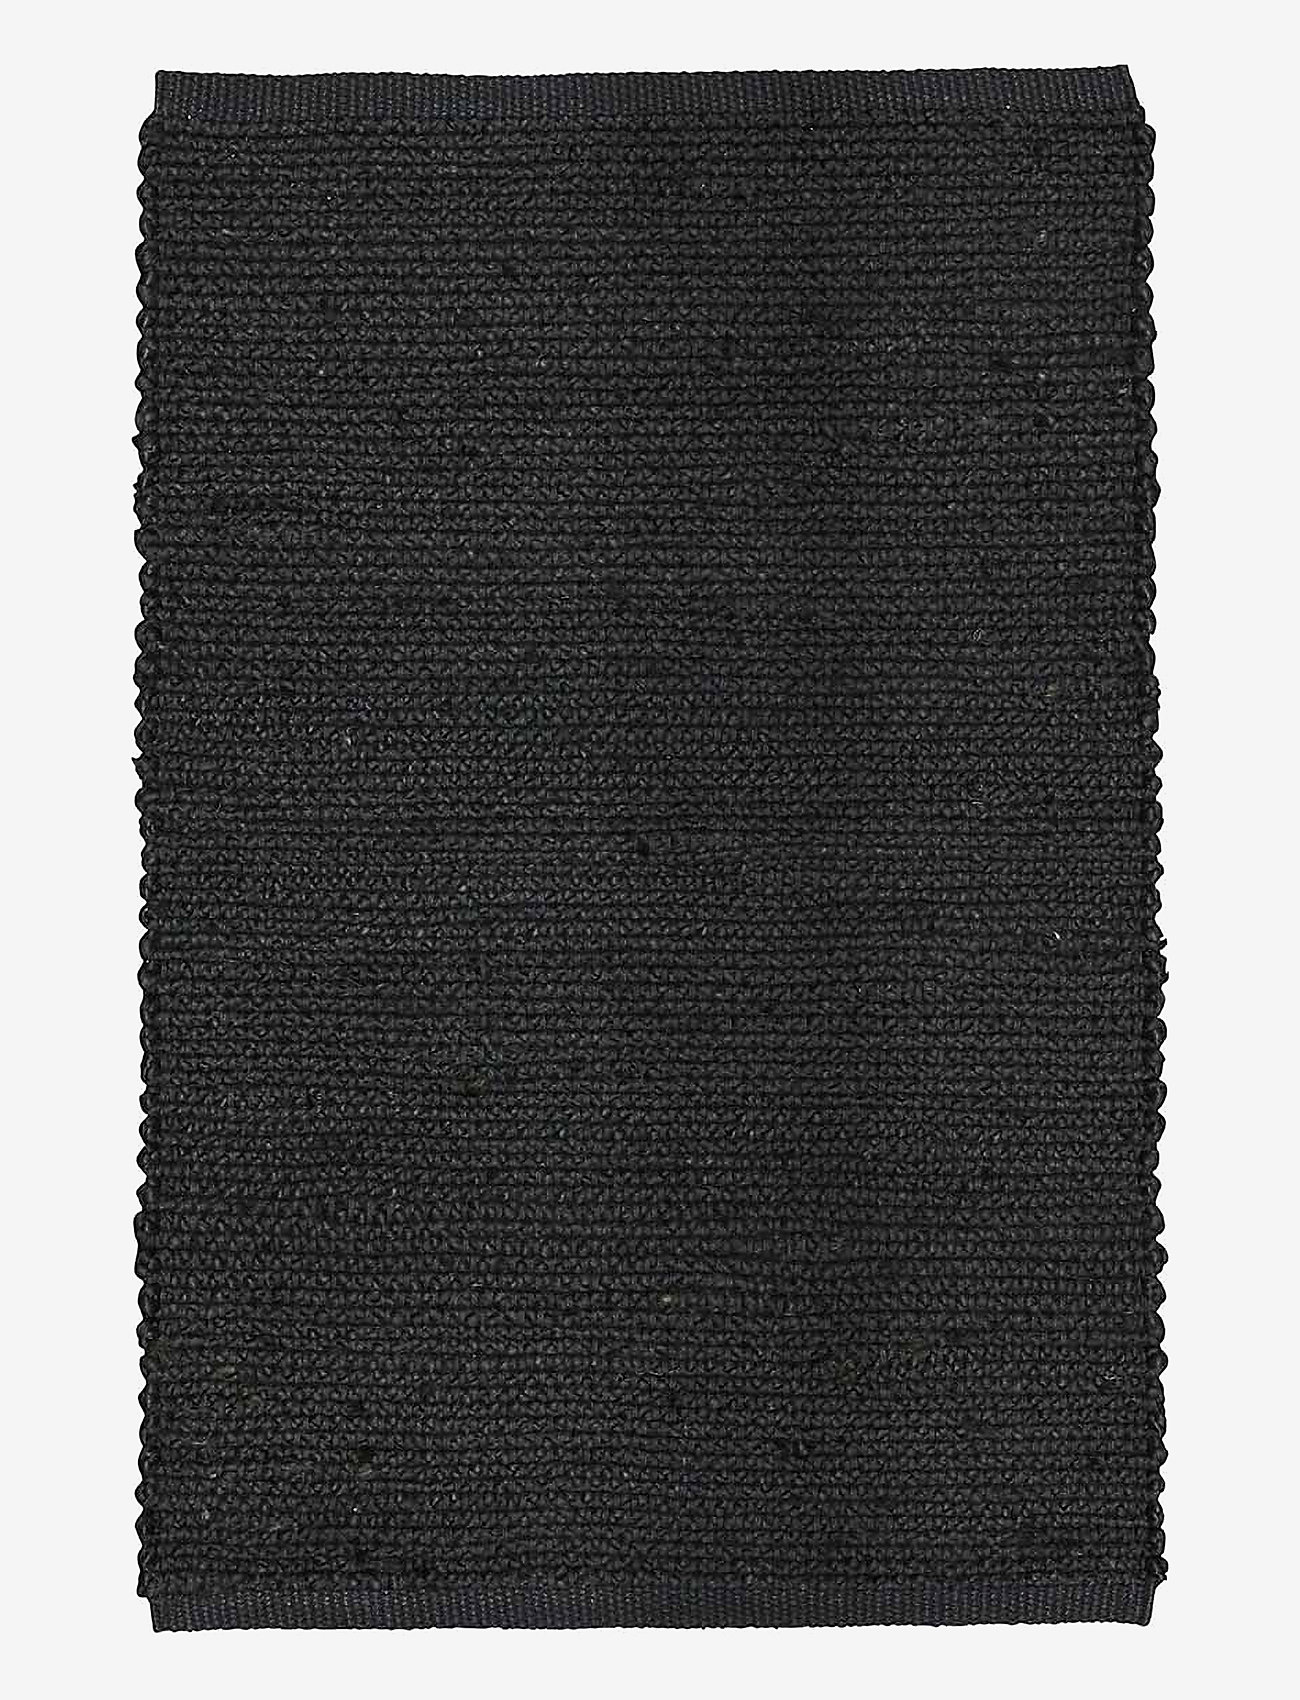 Boel & Jan - Carpet - Merida - die niedrigsten preise - black - 0